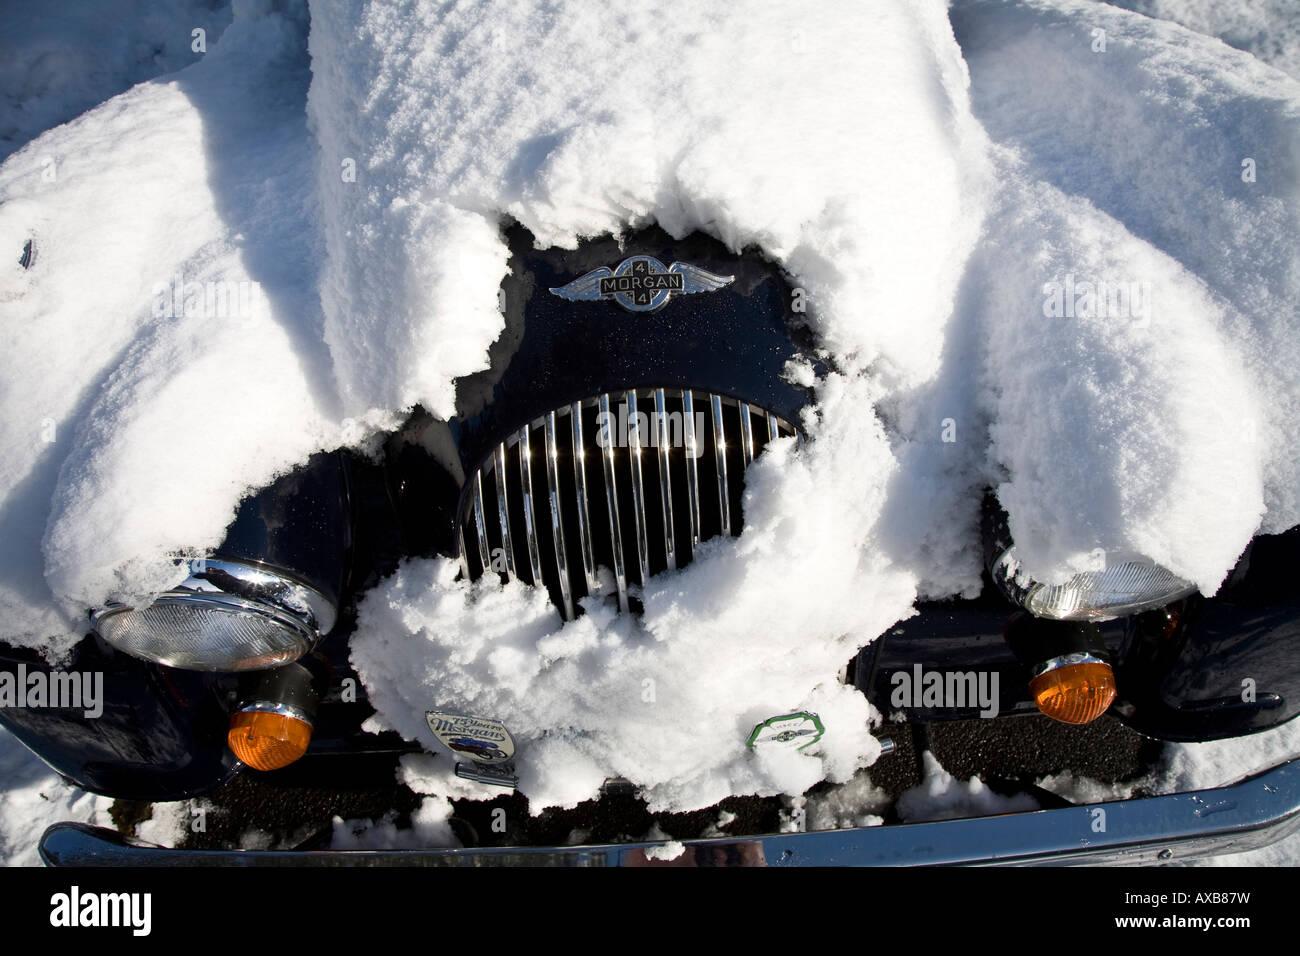 Kühlergrill von einem Morgan Sports Car mit Schnee bedeckt Stockfoto